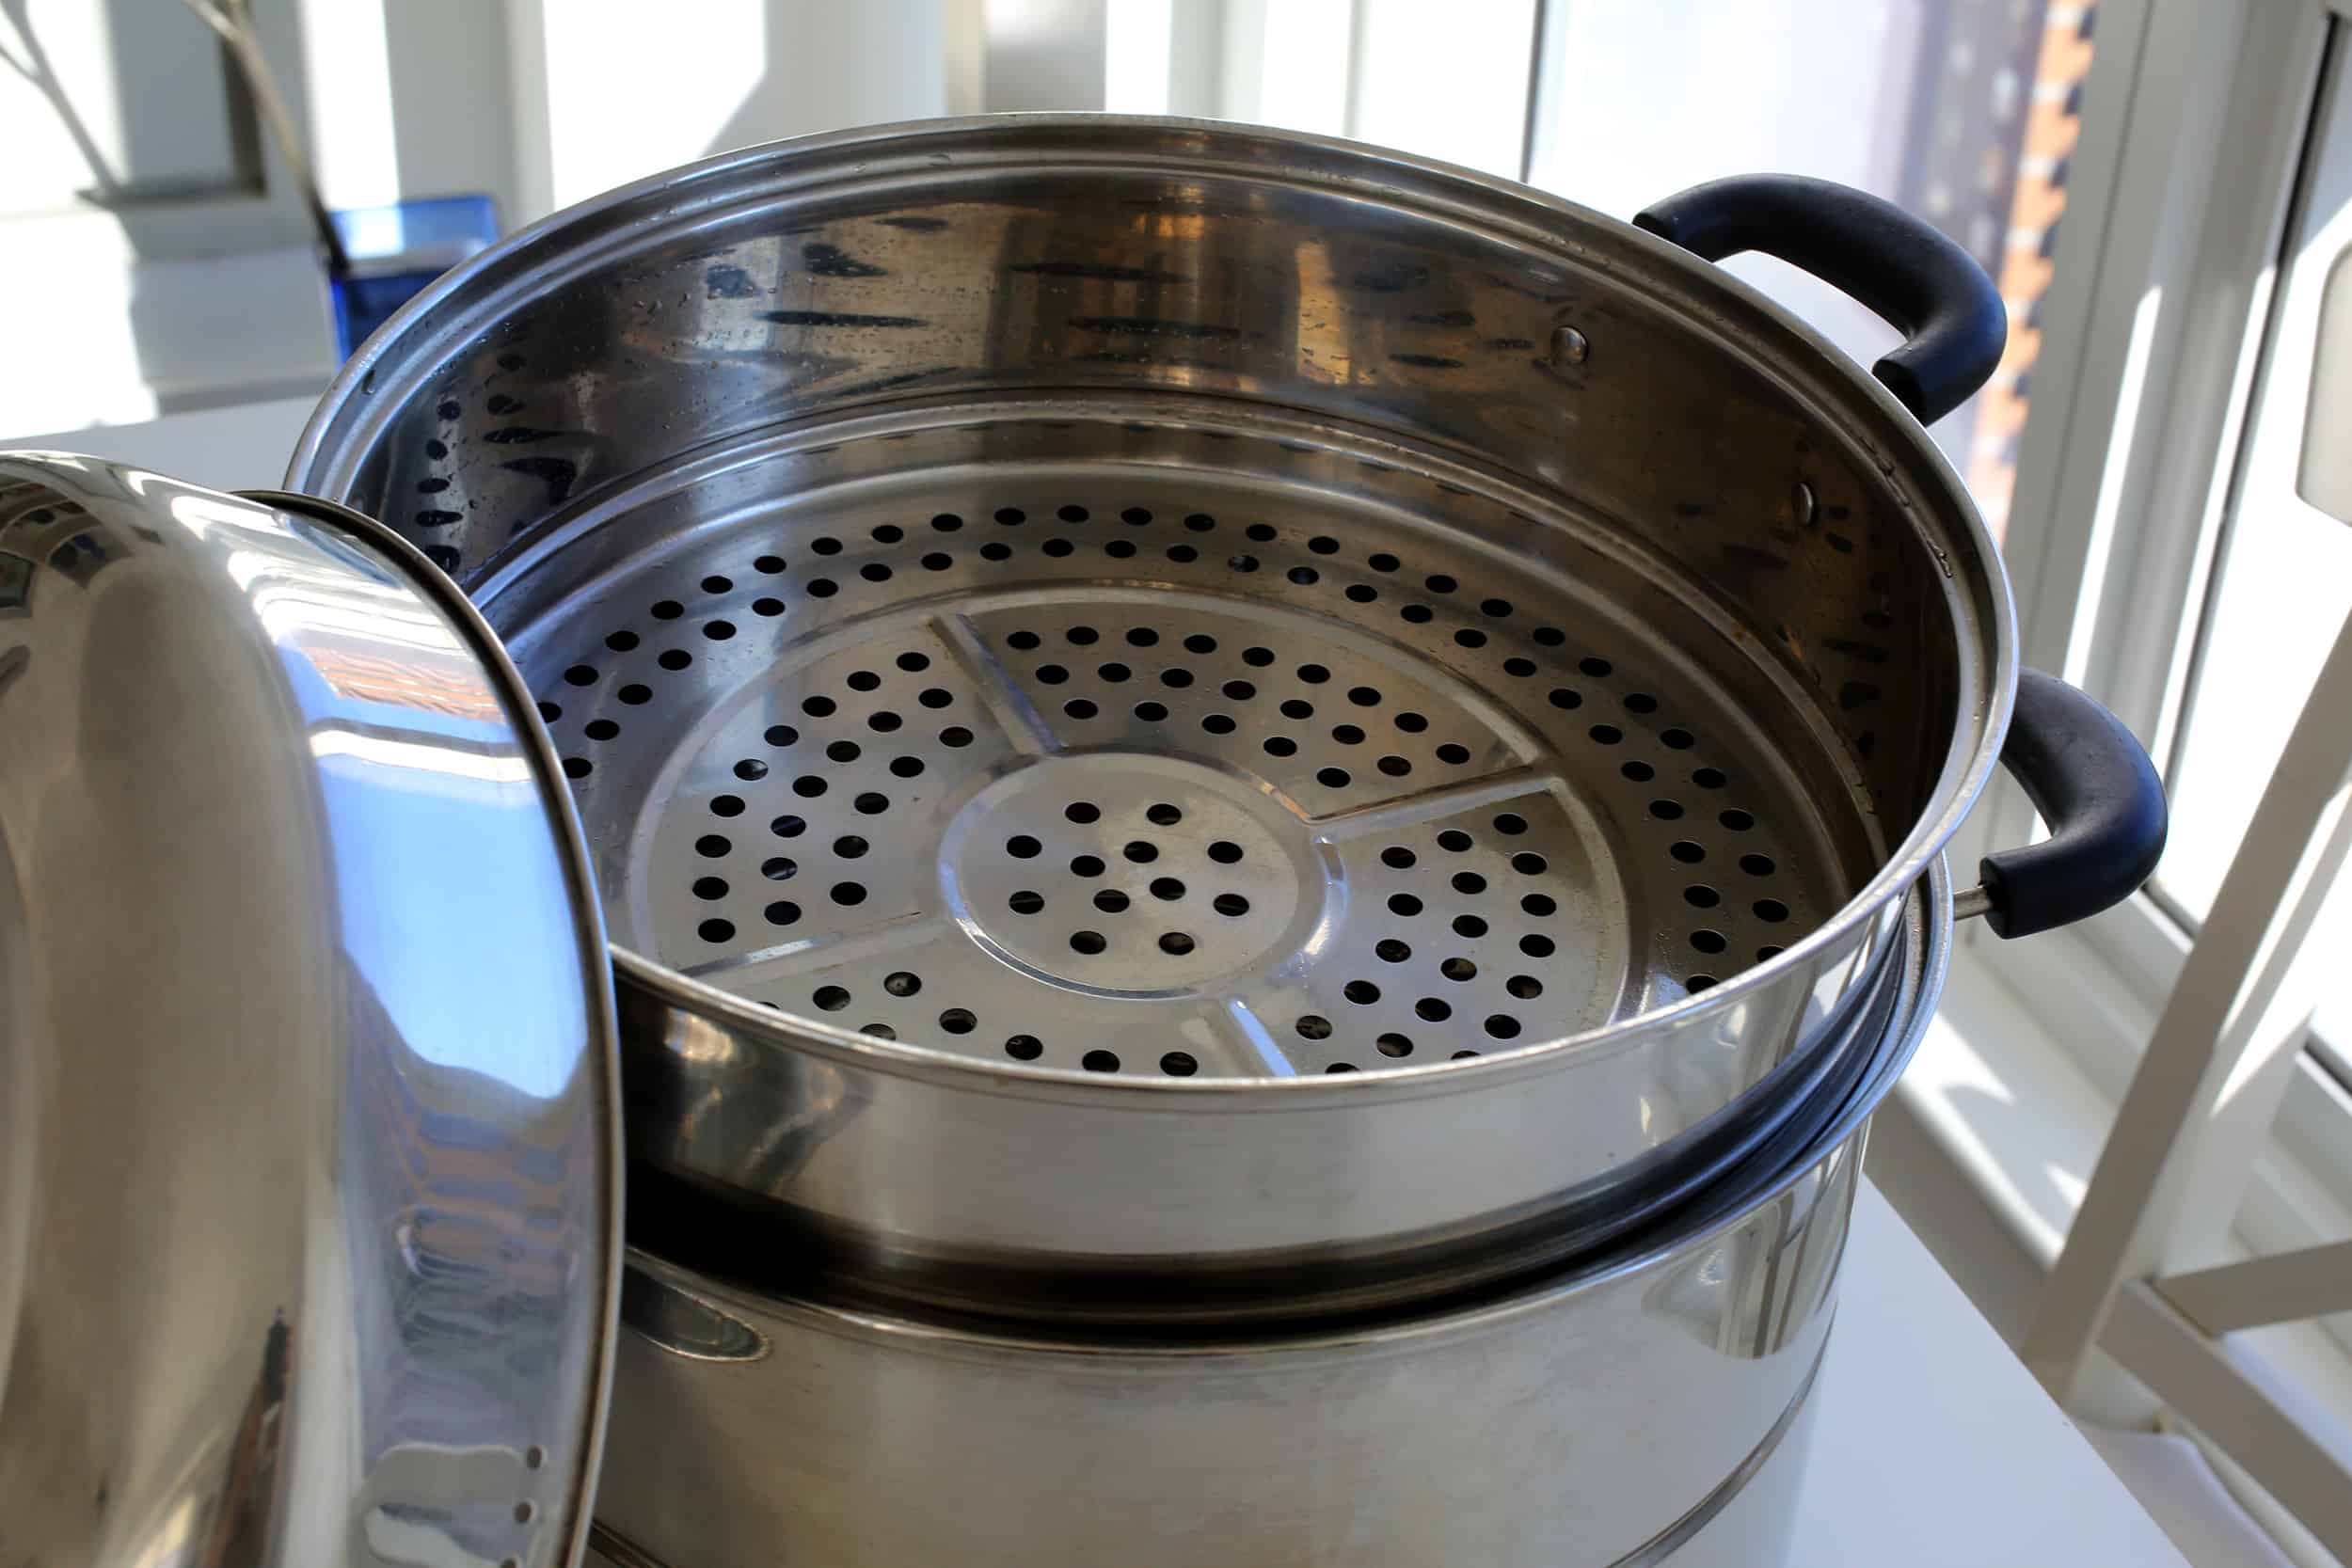 VEVOR 5 Decks Electric Food Steamer Traditional Vegetable Pot Cooker Stackable Baskets